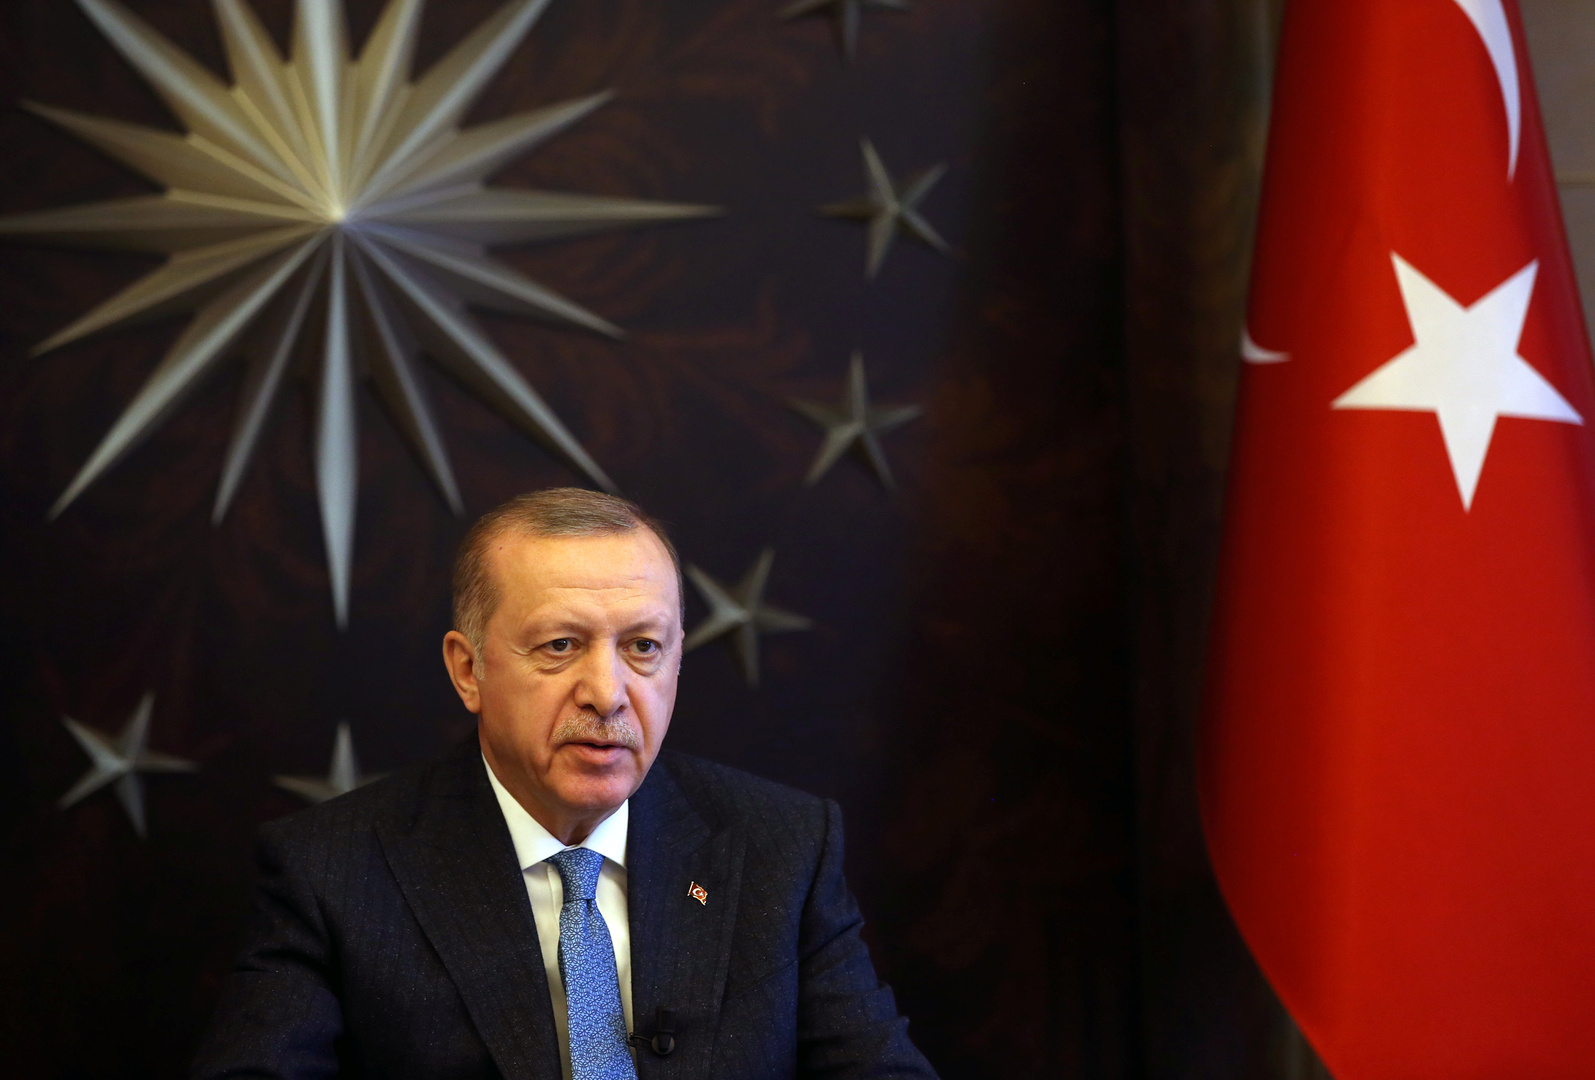 أردوغان يأمر بتوزيع كمامات طبية مجانية لمواطنيه من الفئة العمرية 20 - 65 عاما